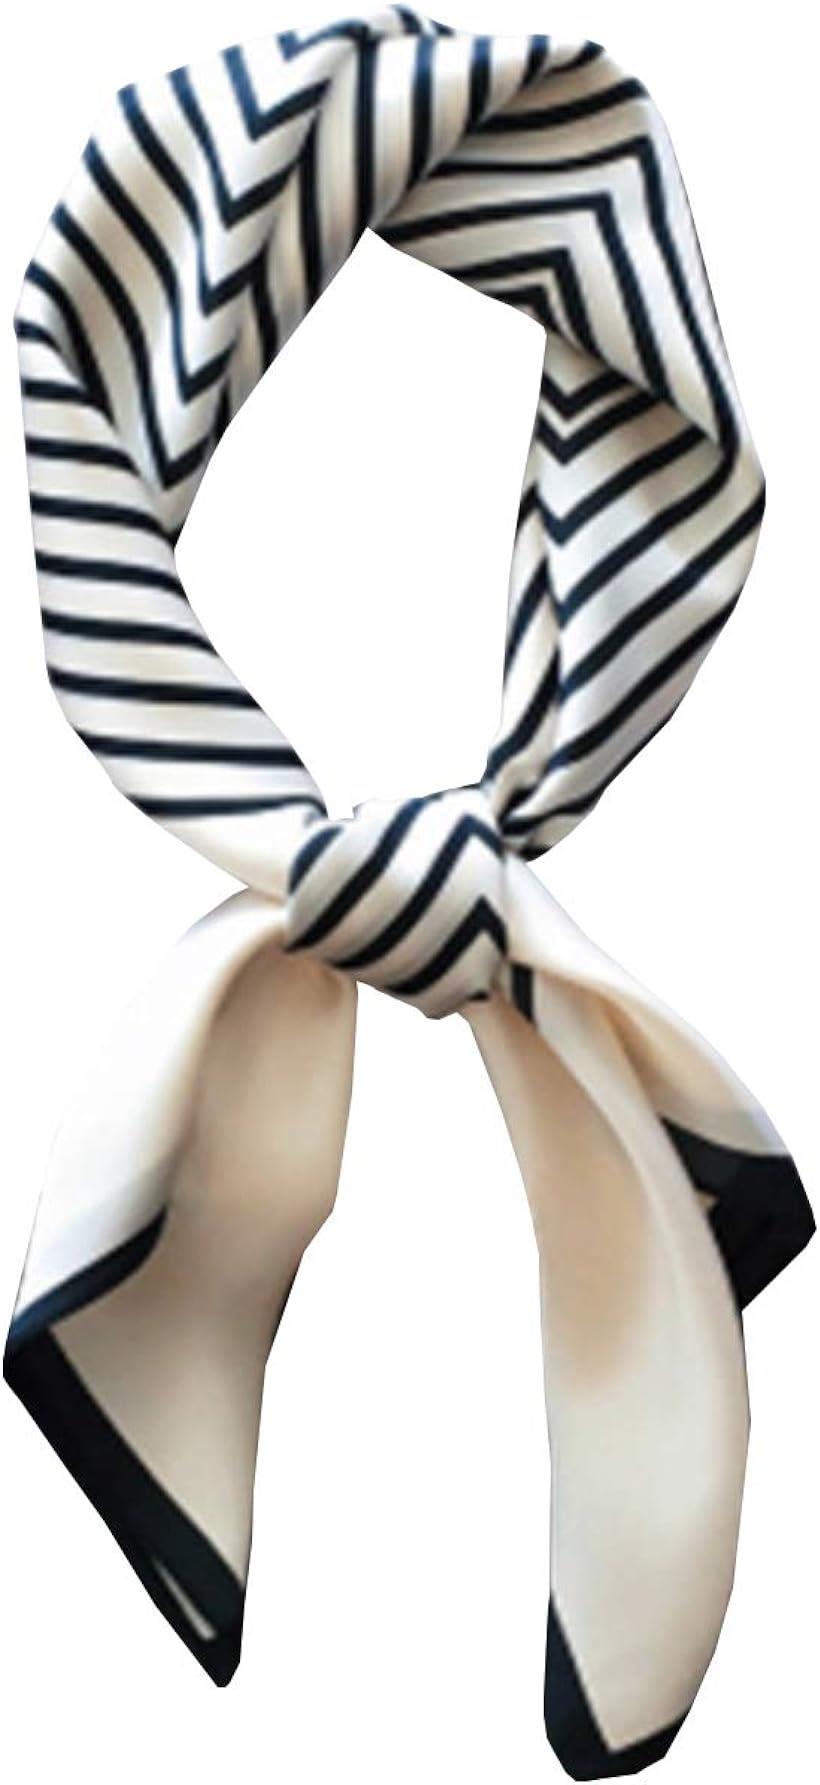  スカーフ レディース 春 シルク調 正方形 薄手 UVカット お洒落 小物 70×70 cm ストライプホワイト